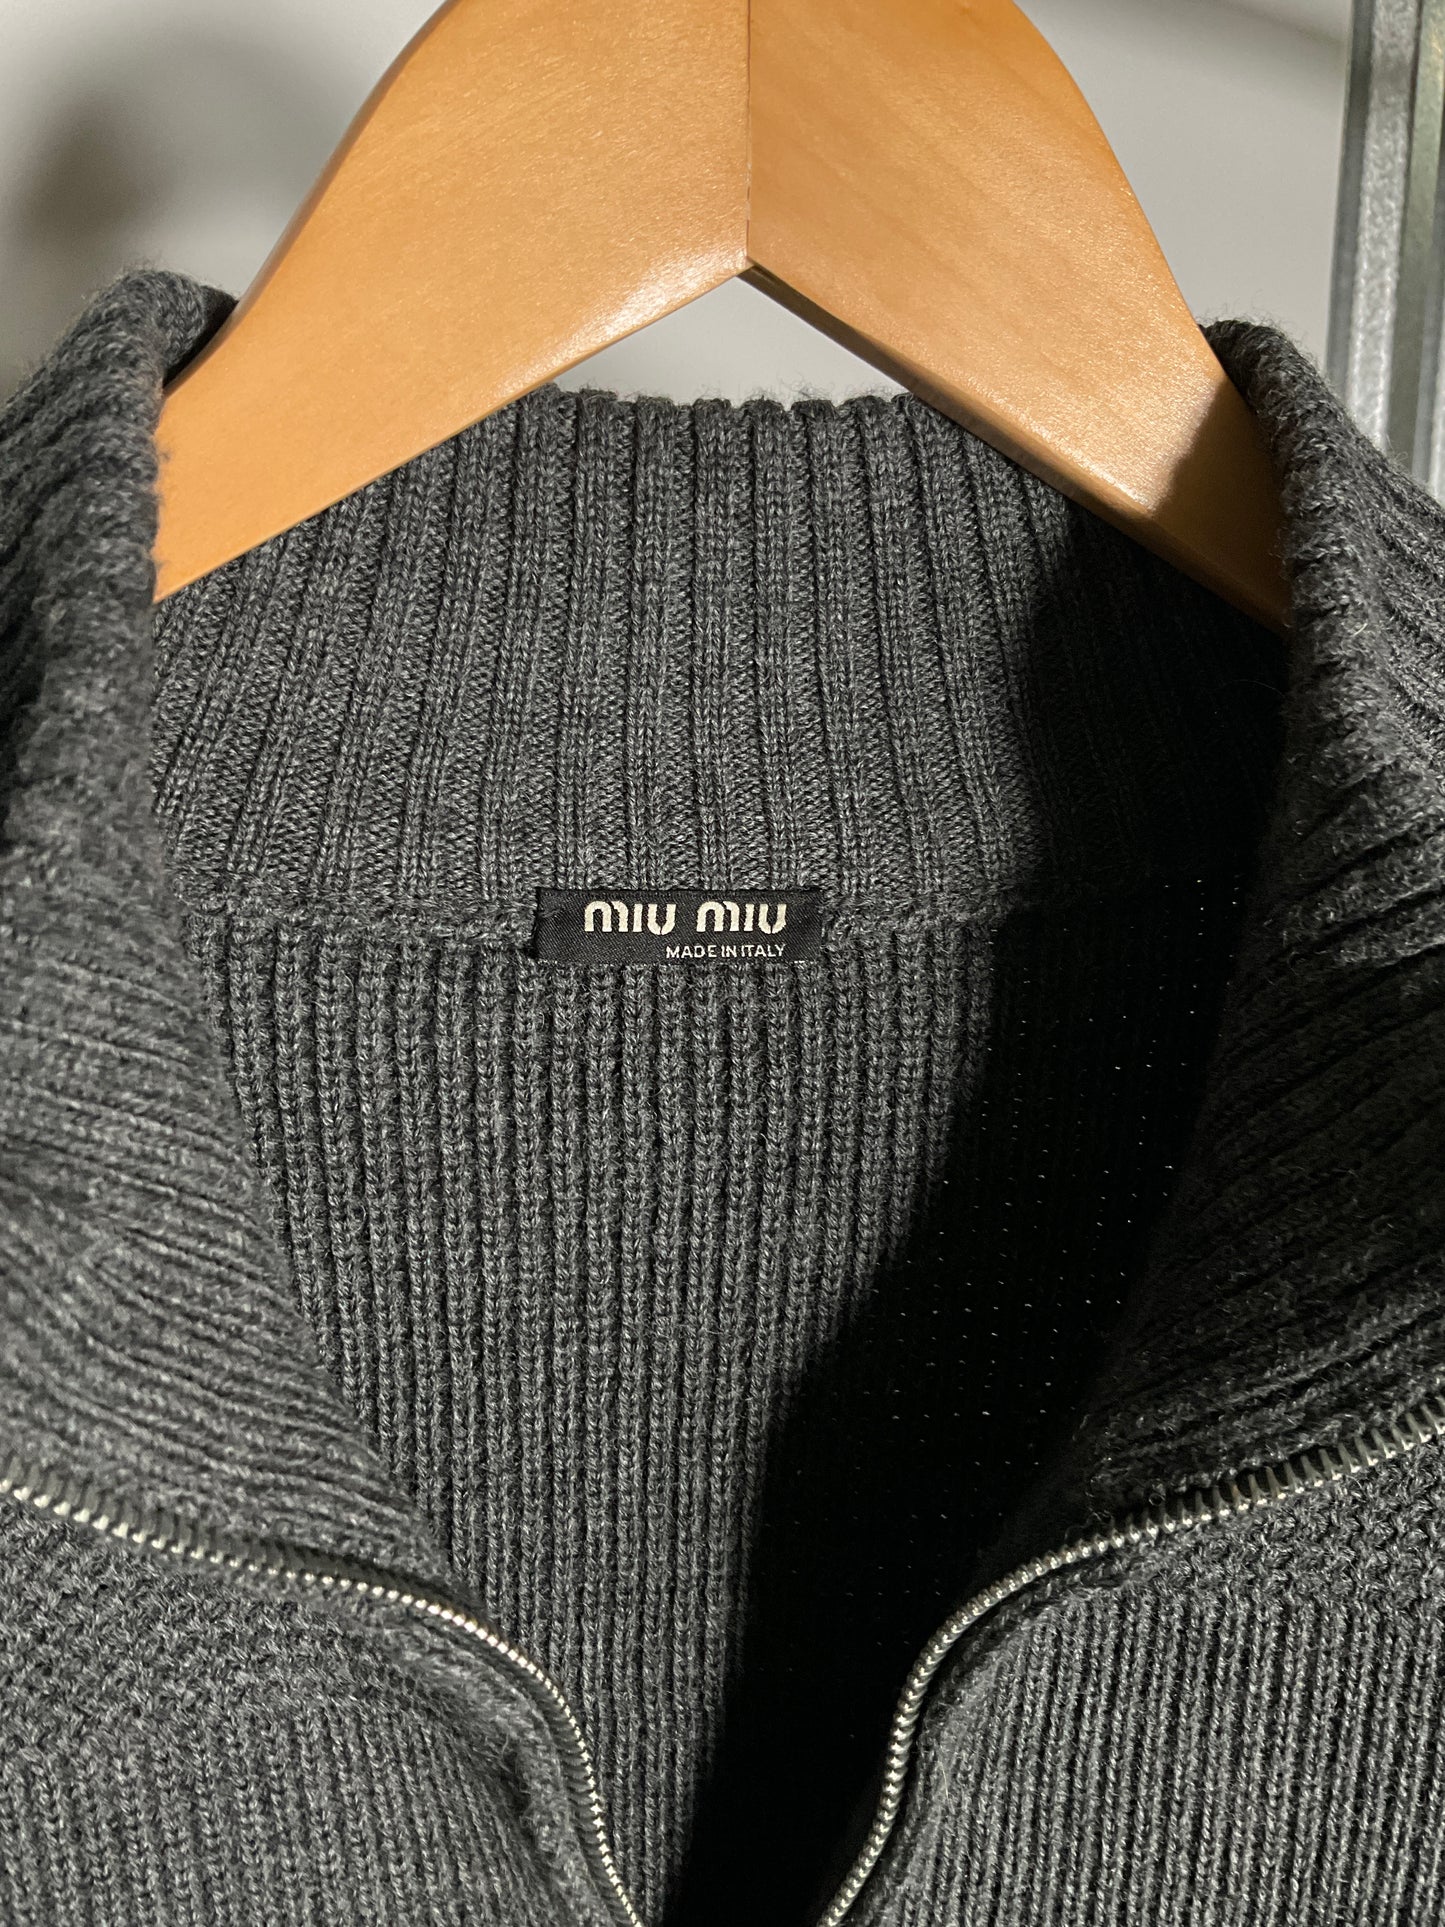 Miu Miu Vintage Wool Jacket